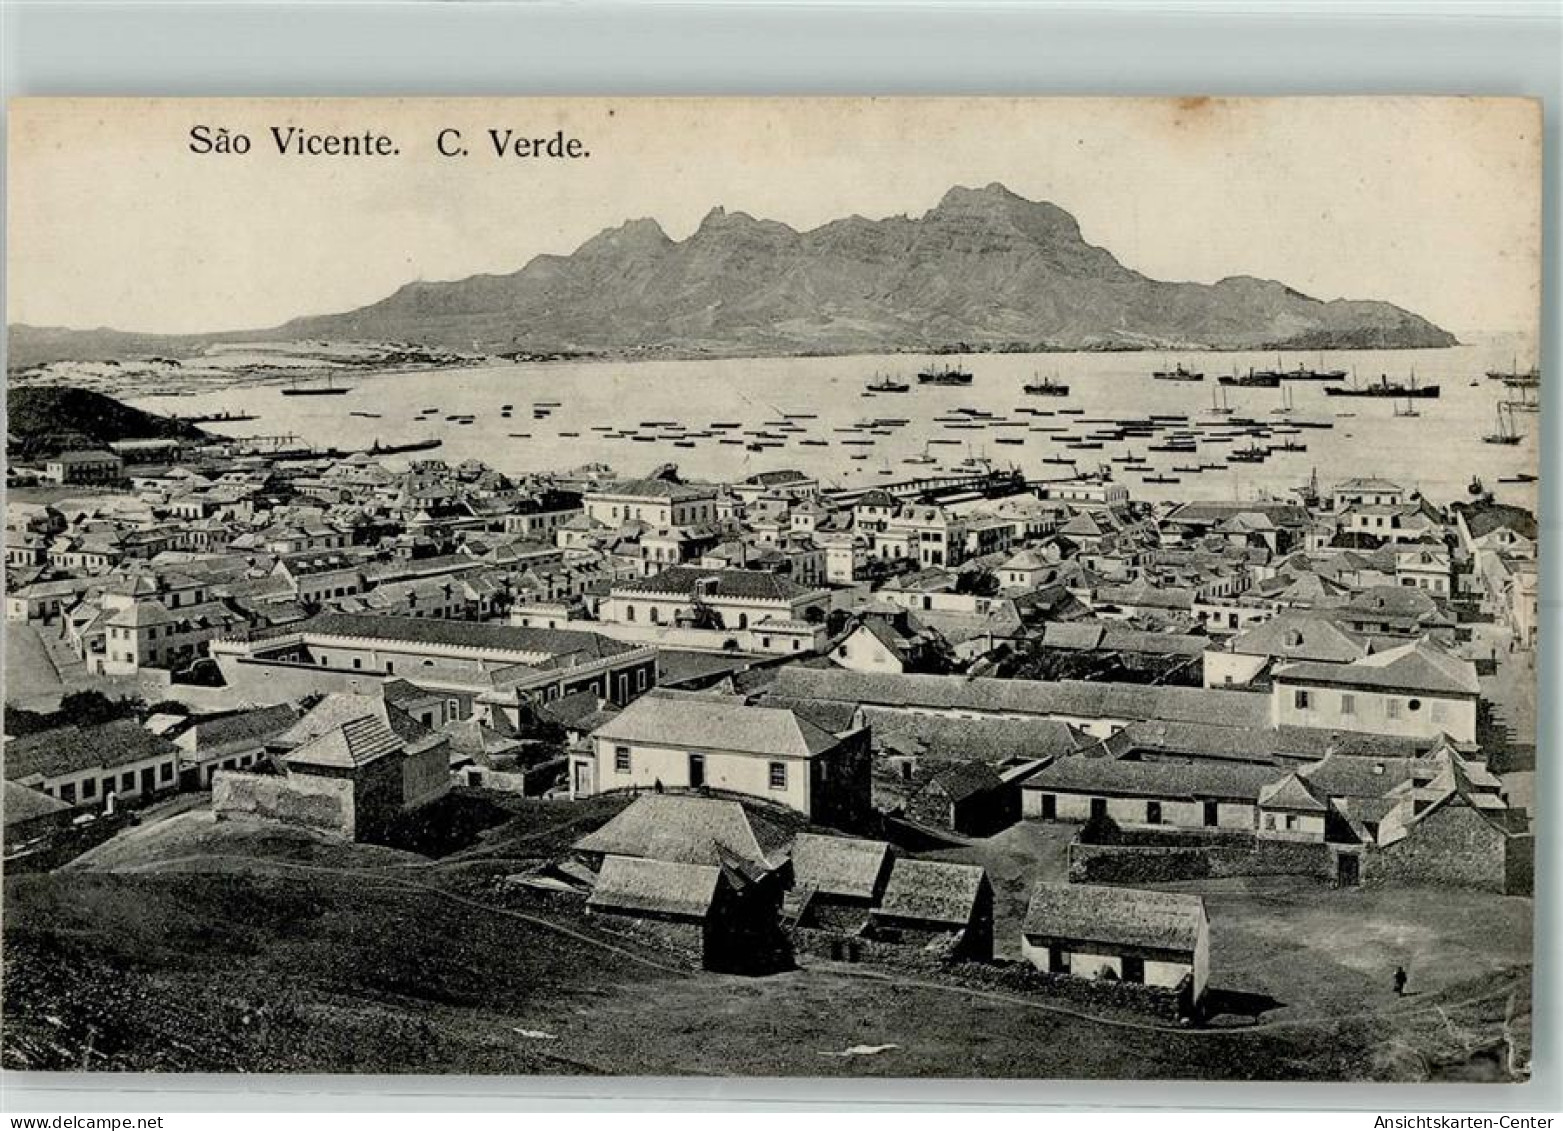 52229806 - Sao Vicente St. Vincent - Cape Verde